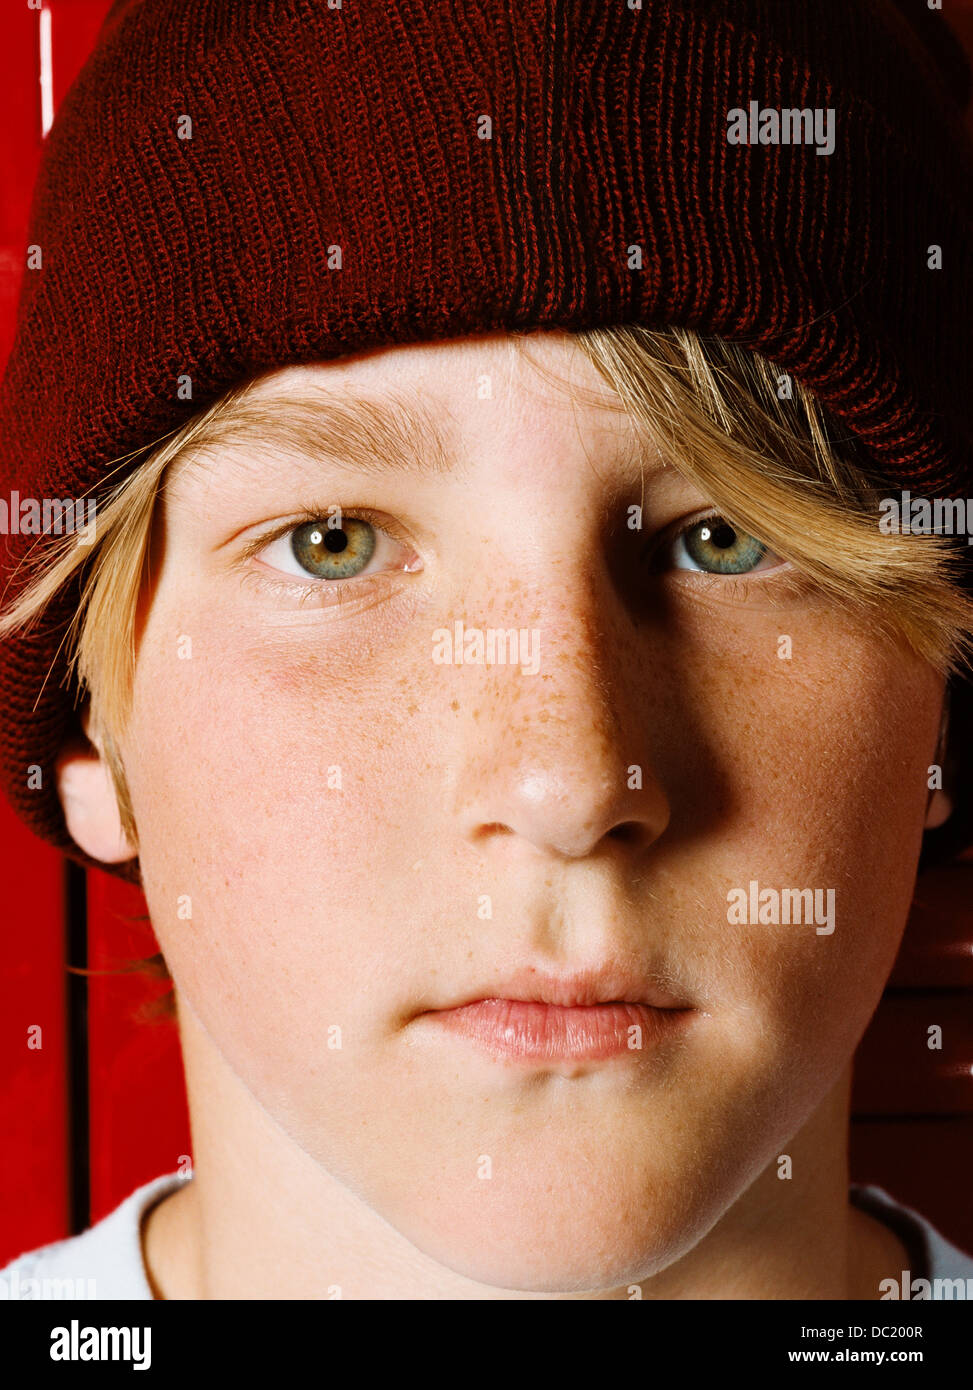 Boy wearing knit hat in school locker room, portrait Stock Photo